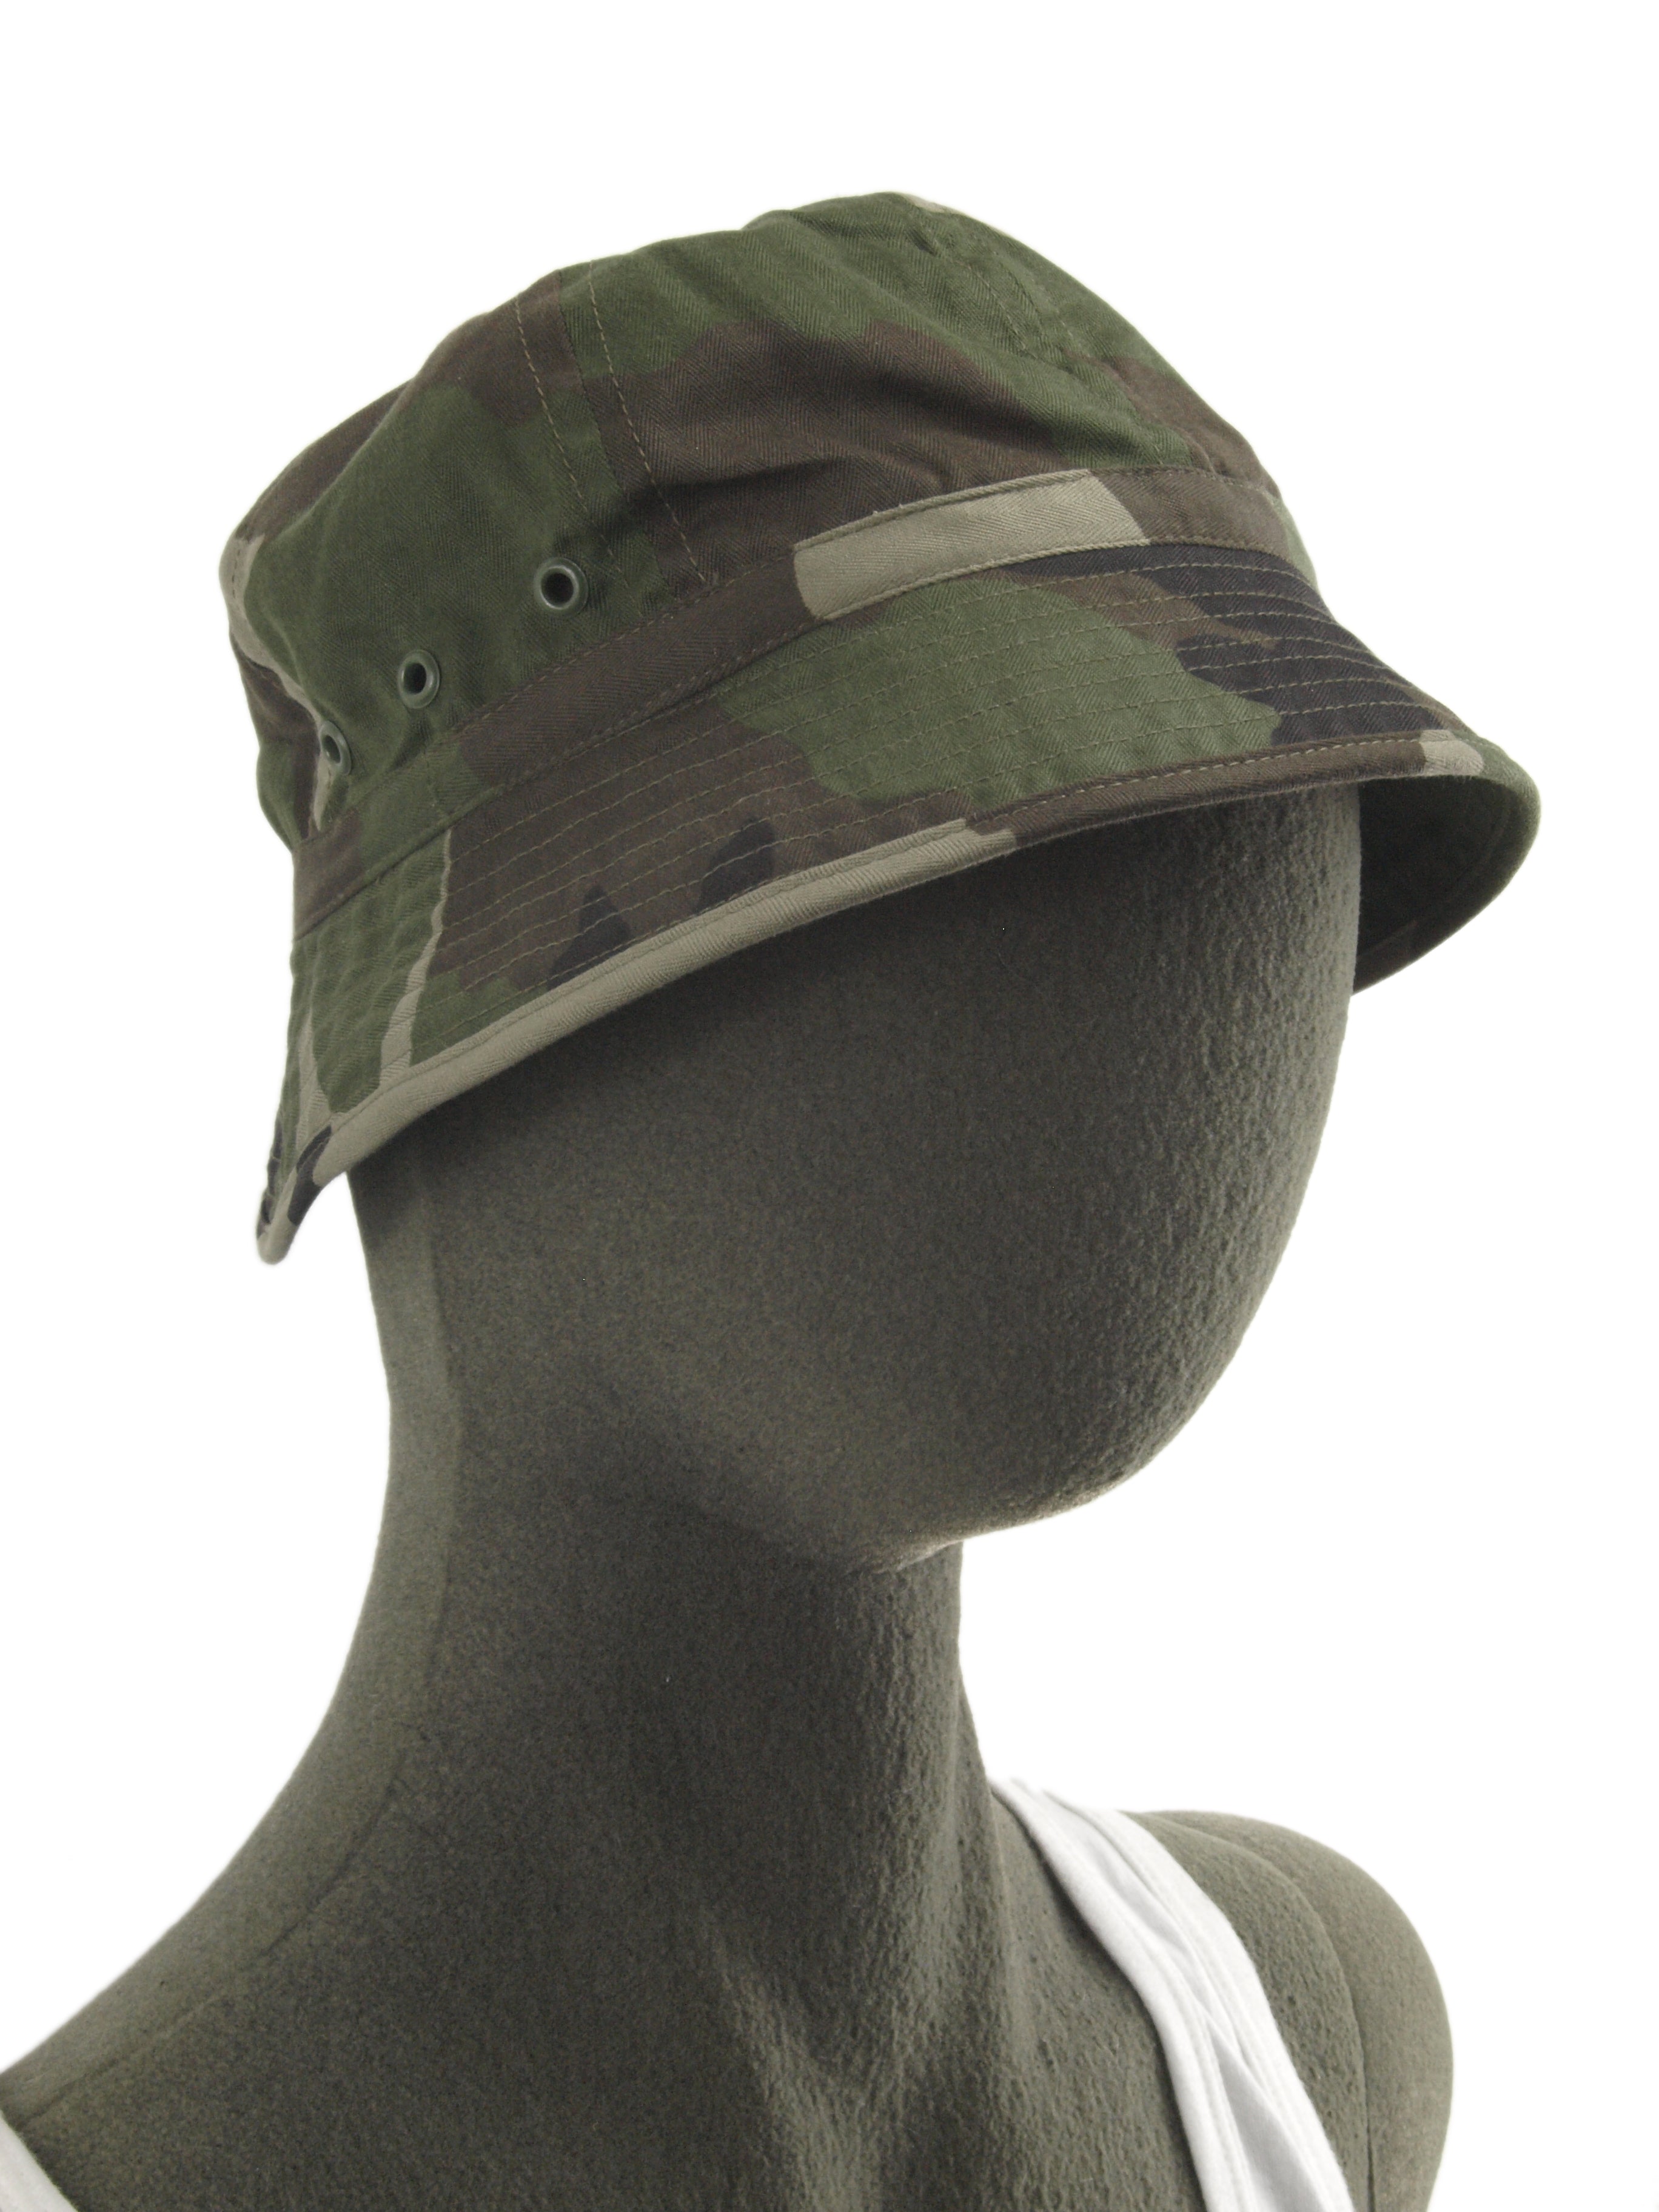 Original French Foreign Legion Desert Camouflage Boonie Sun Hat